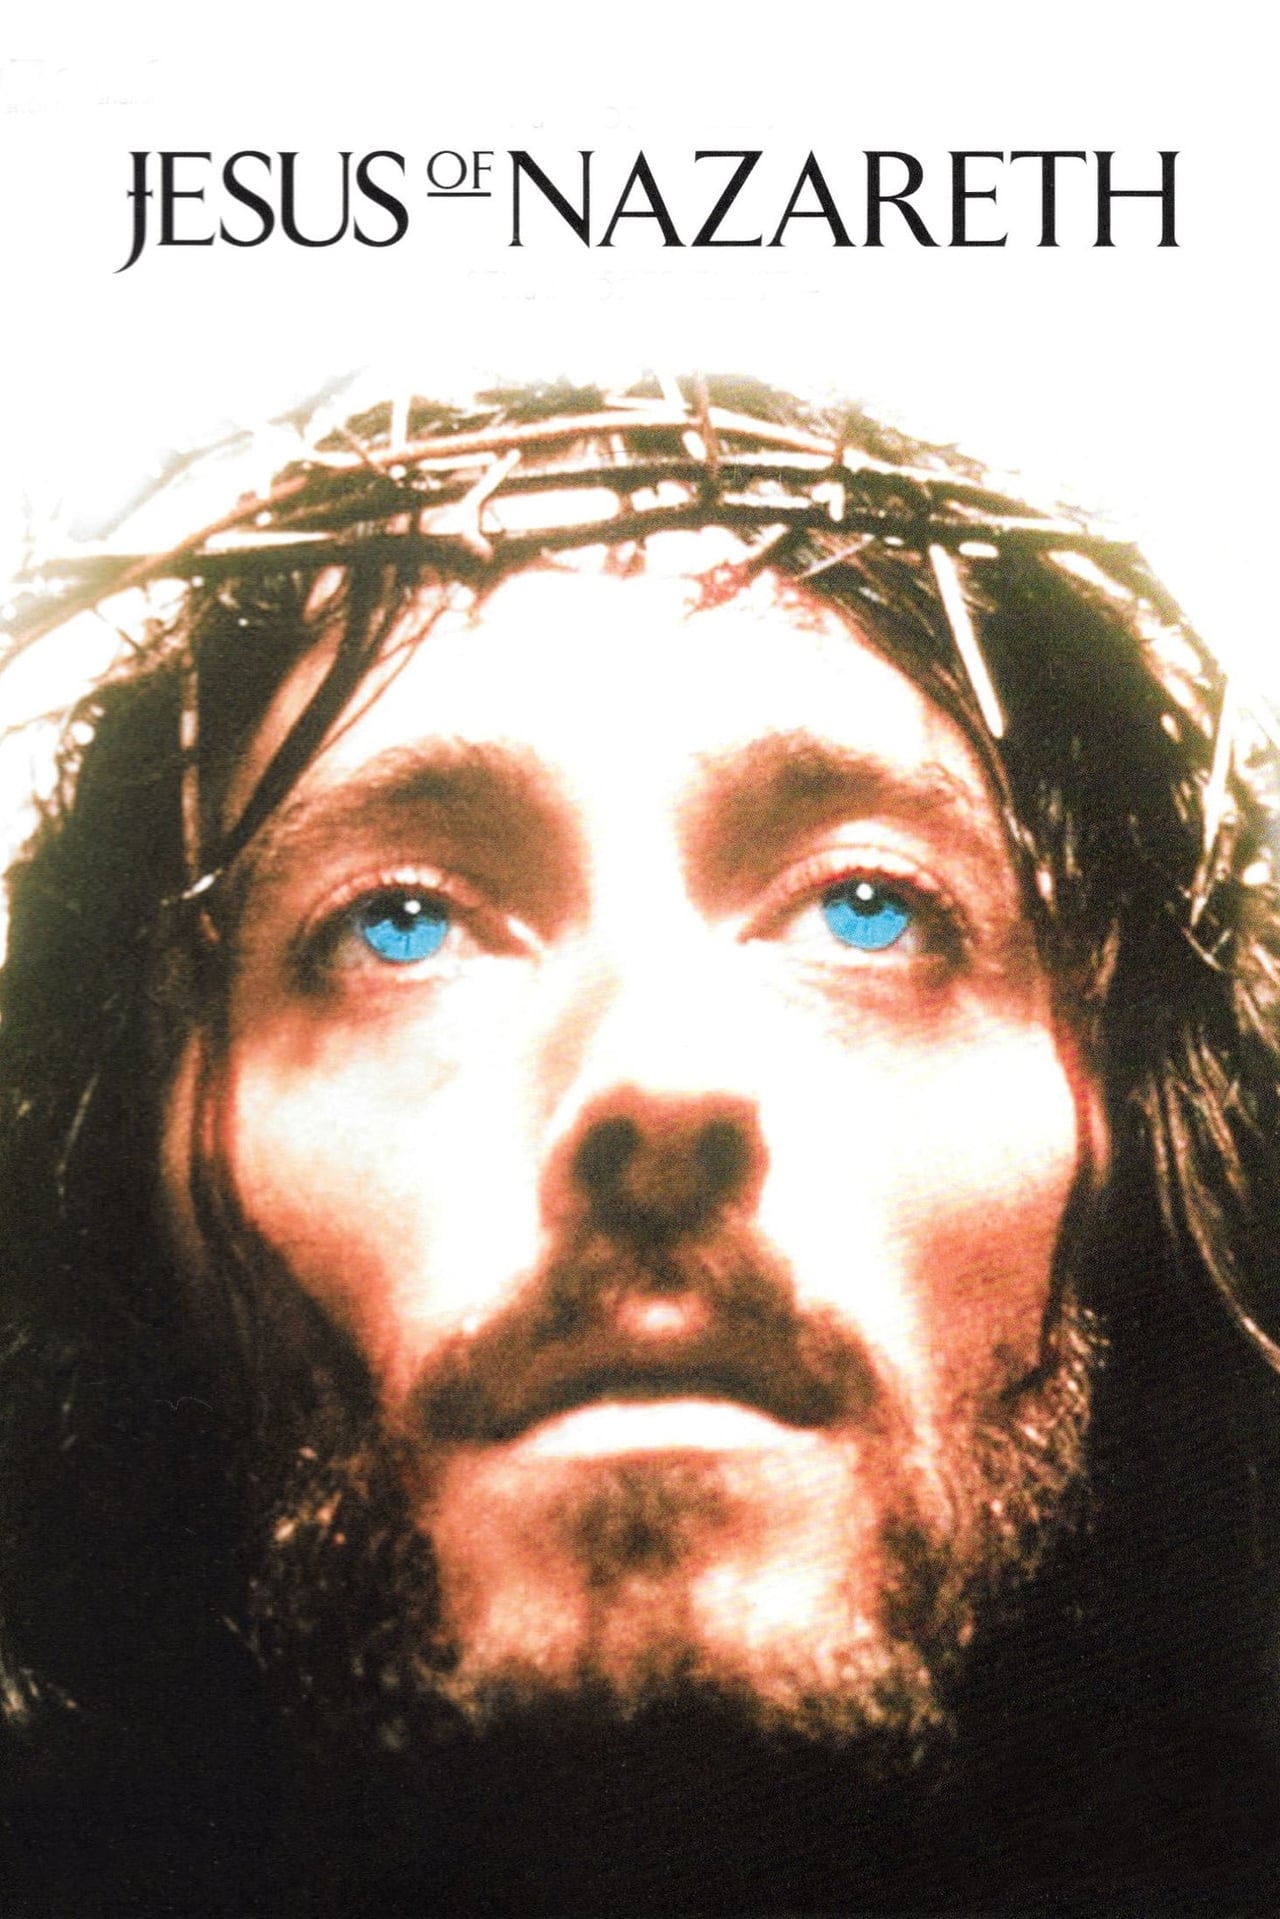 NF - Jesus of Nazareth Part 2